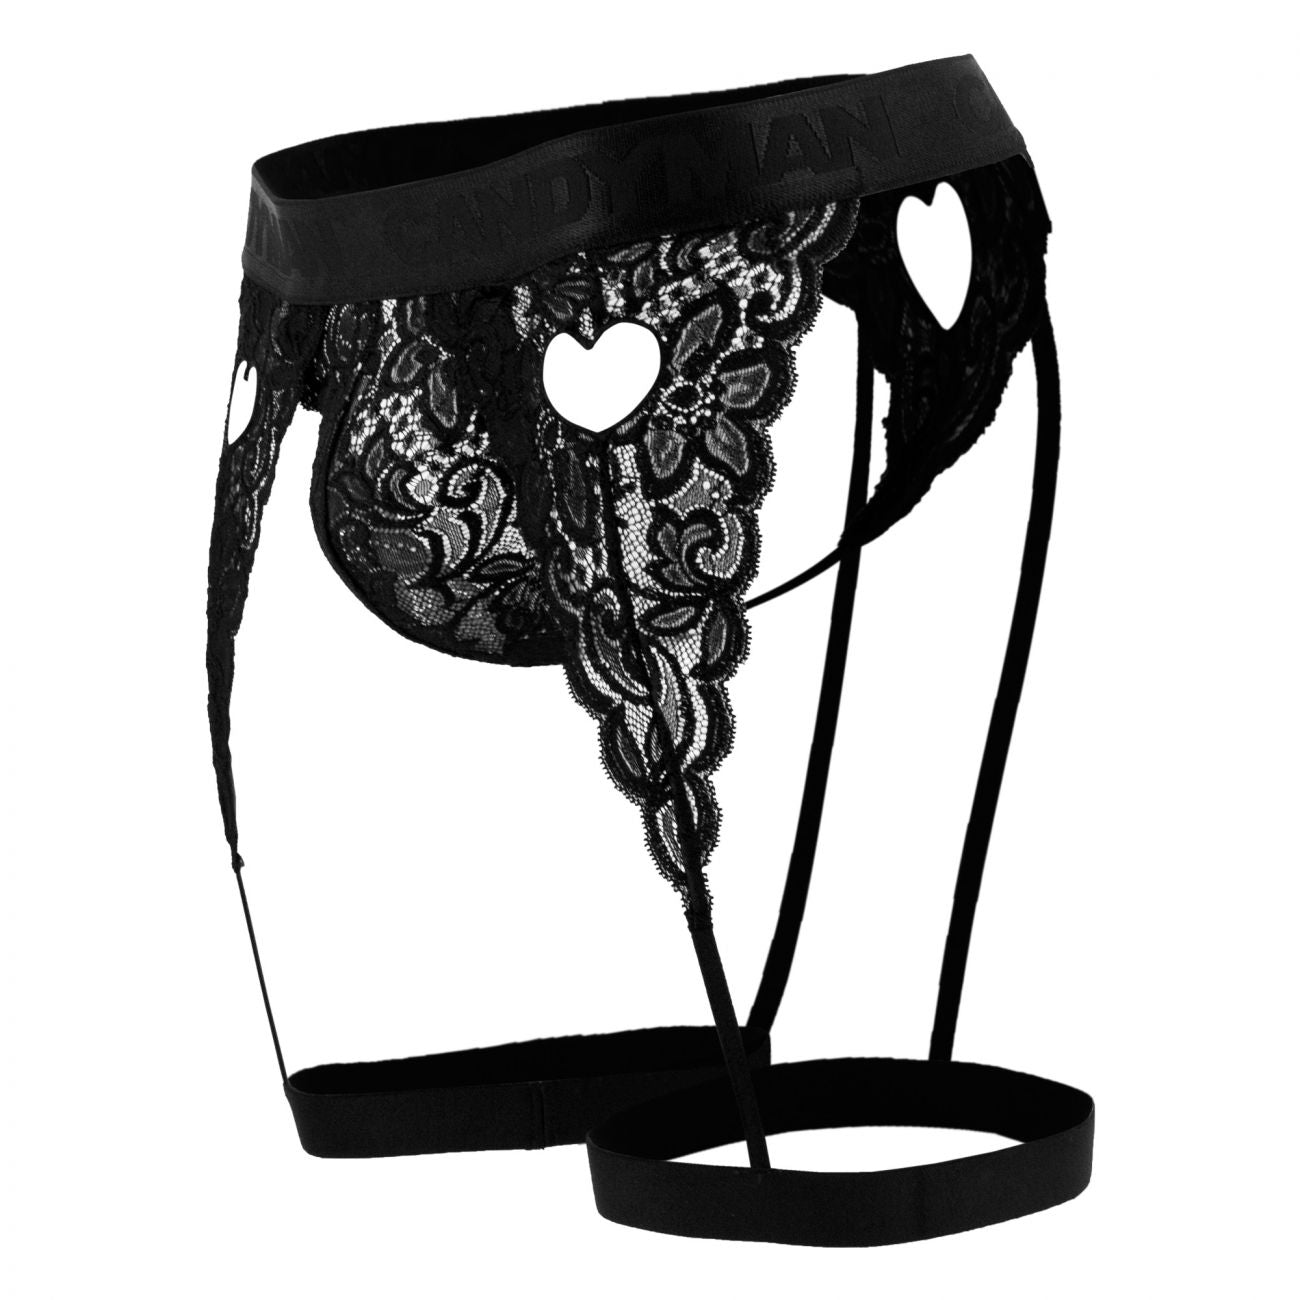 CandyMan 99310X Lace Garter Thong Black Plus Sizes